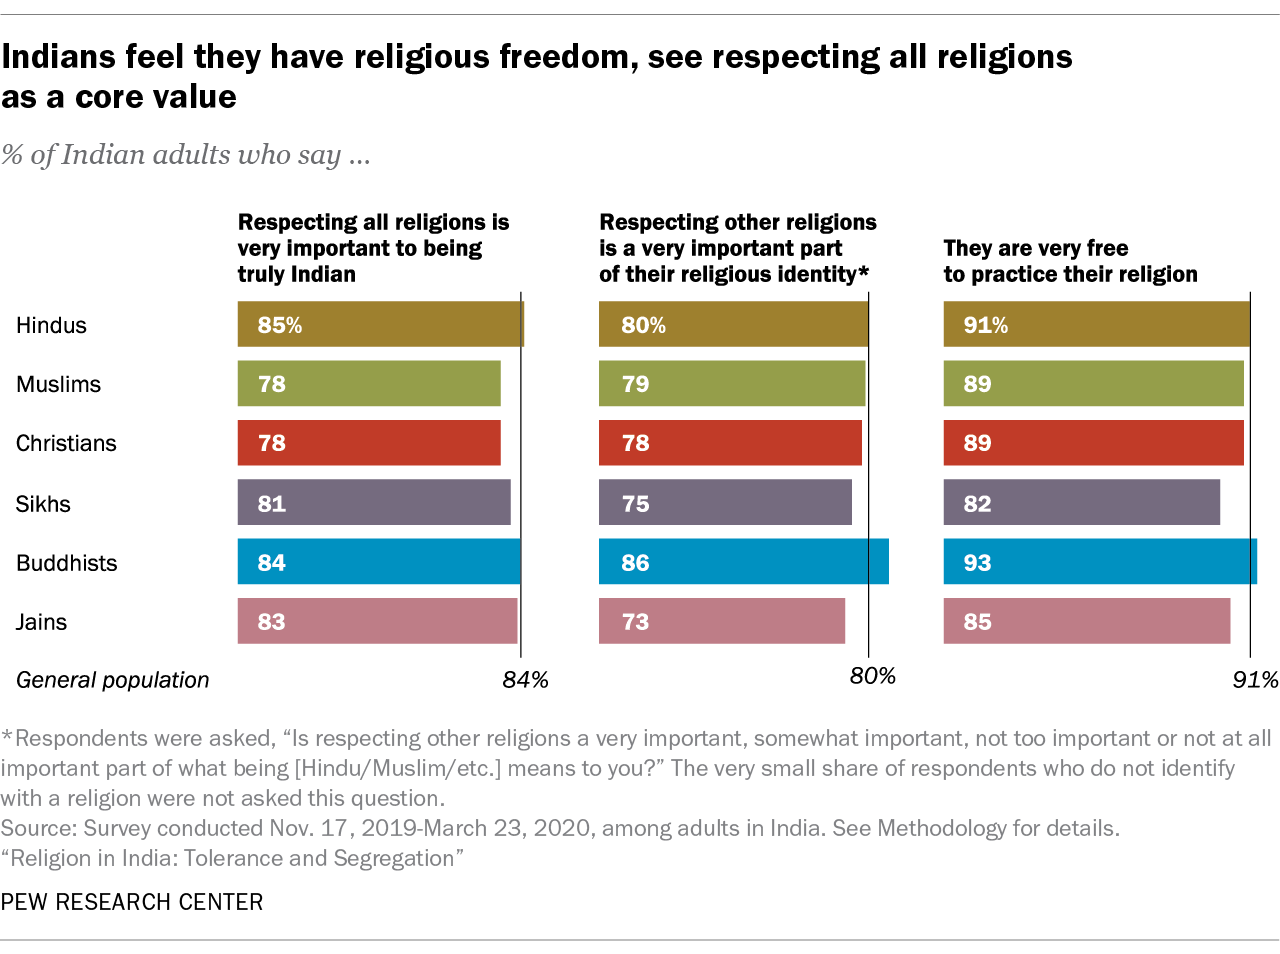 Los indios sienten que tienen libertad religiosa, ven el respeto a todas las religiones como un valor fundamental